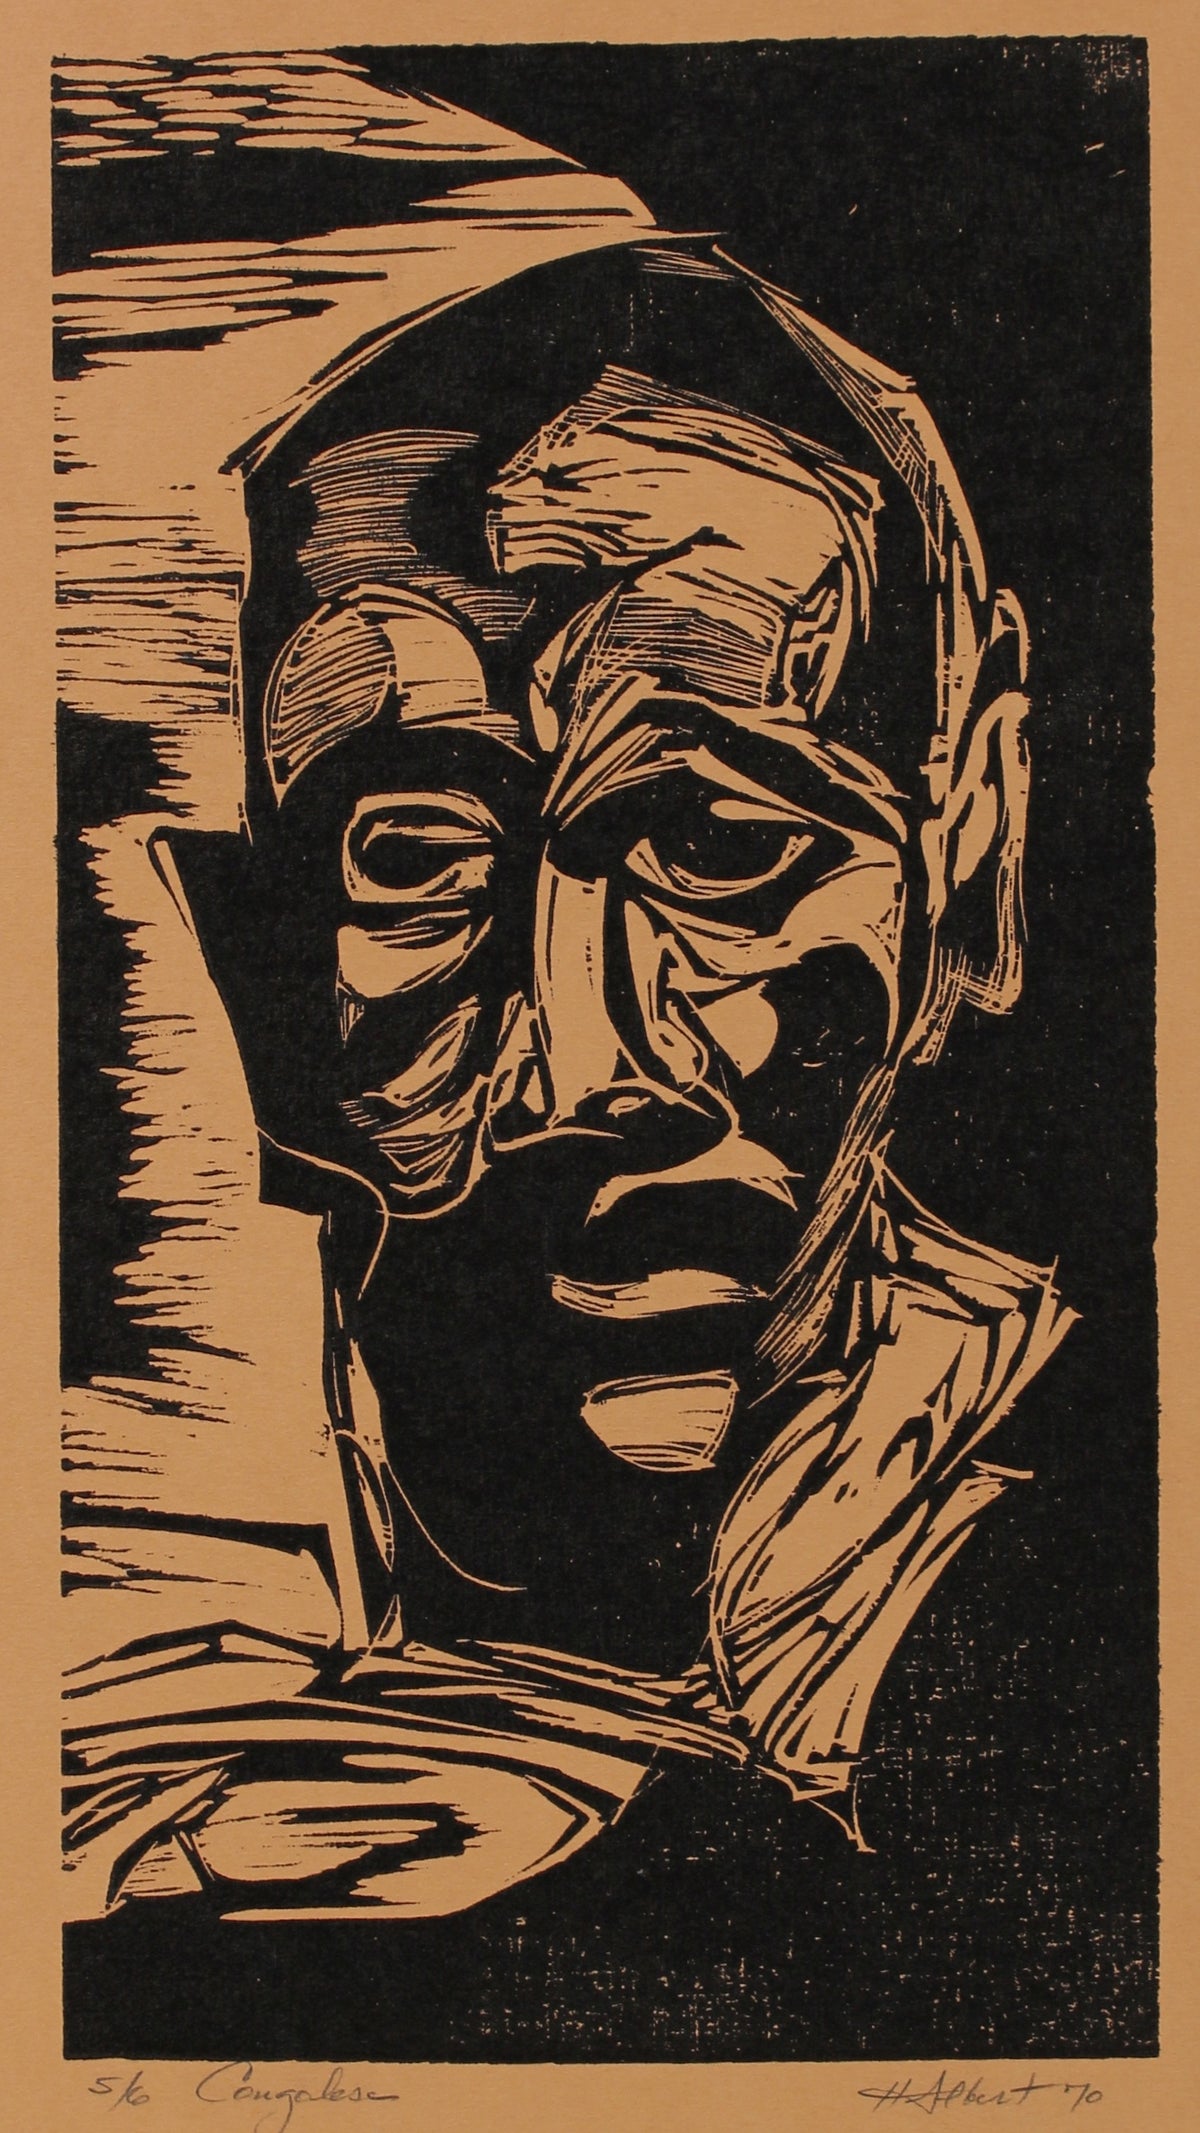 &lt;i&gt;Congolese&lt;/i&gt;&lt;br&gt;1970 Woodcut on Paper&lt;br&gt;&lt;br&gt;#2170